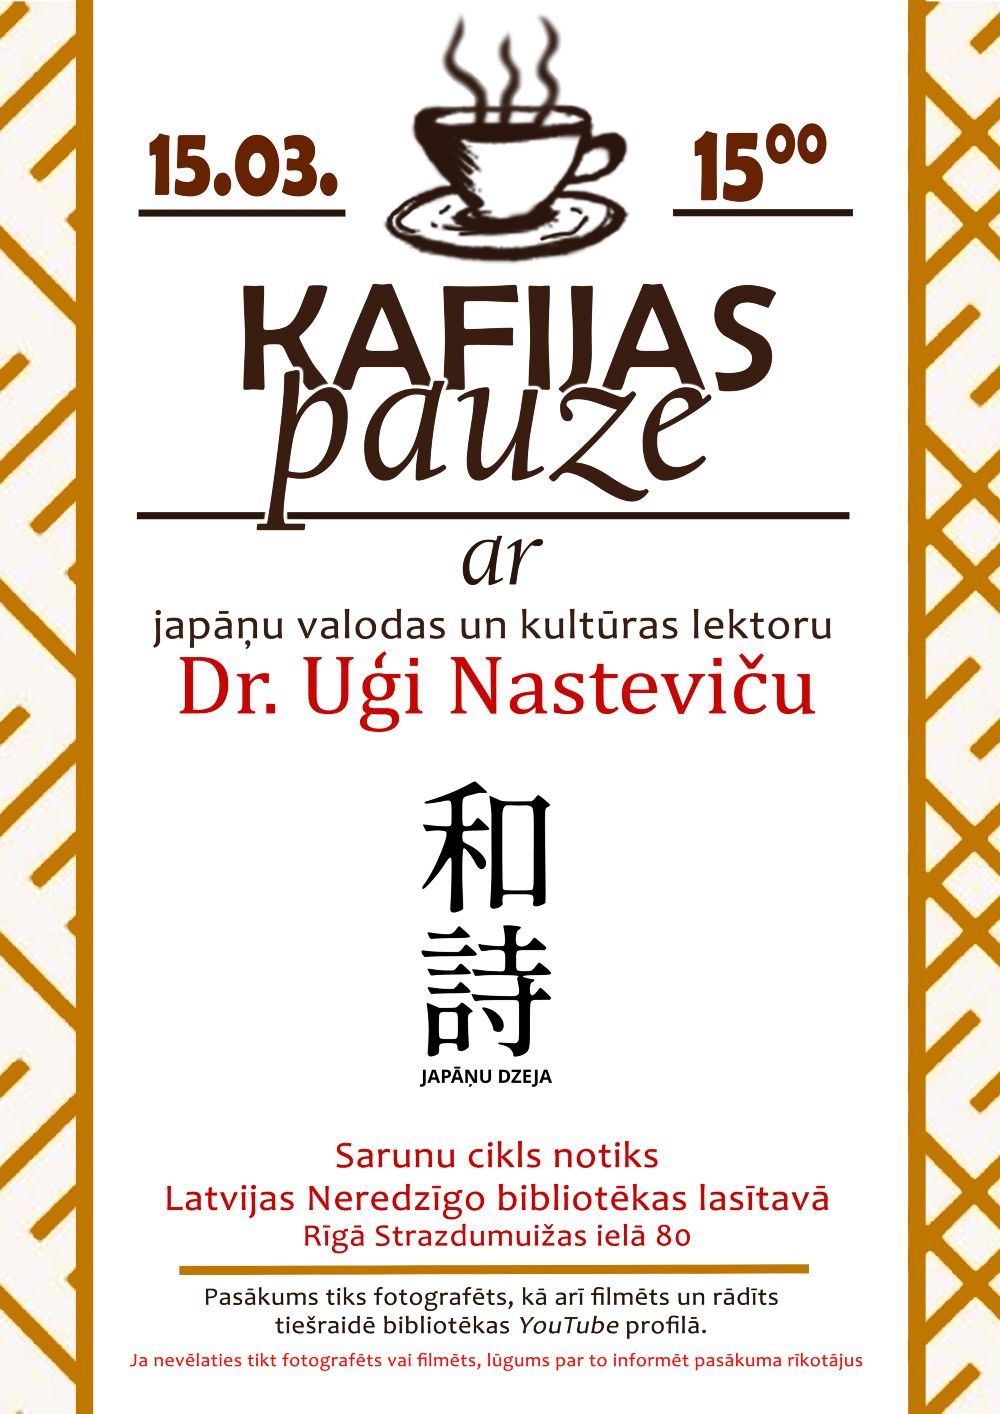 Plakāts "KAFIJAS PAUZE ar japāņu valodas un kultūras lektoru Dr. Uģi Nasteviču 